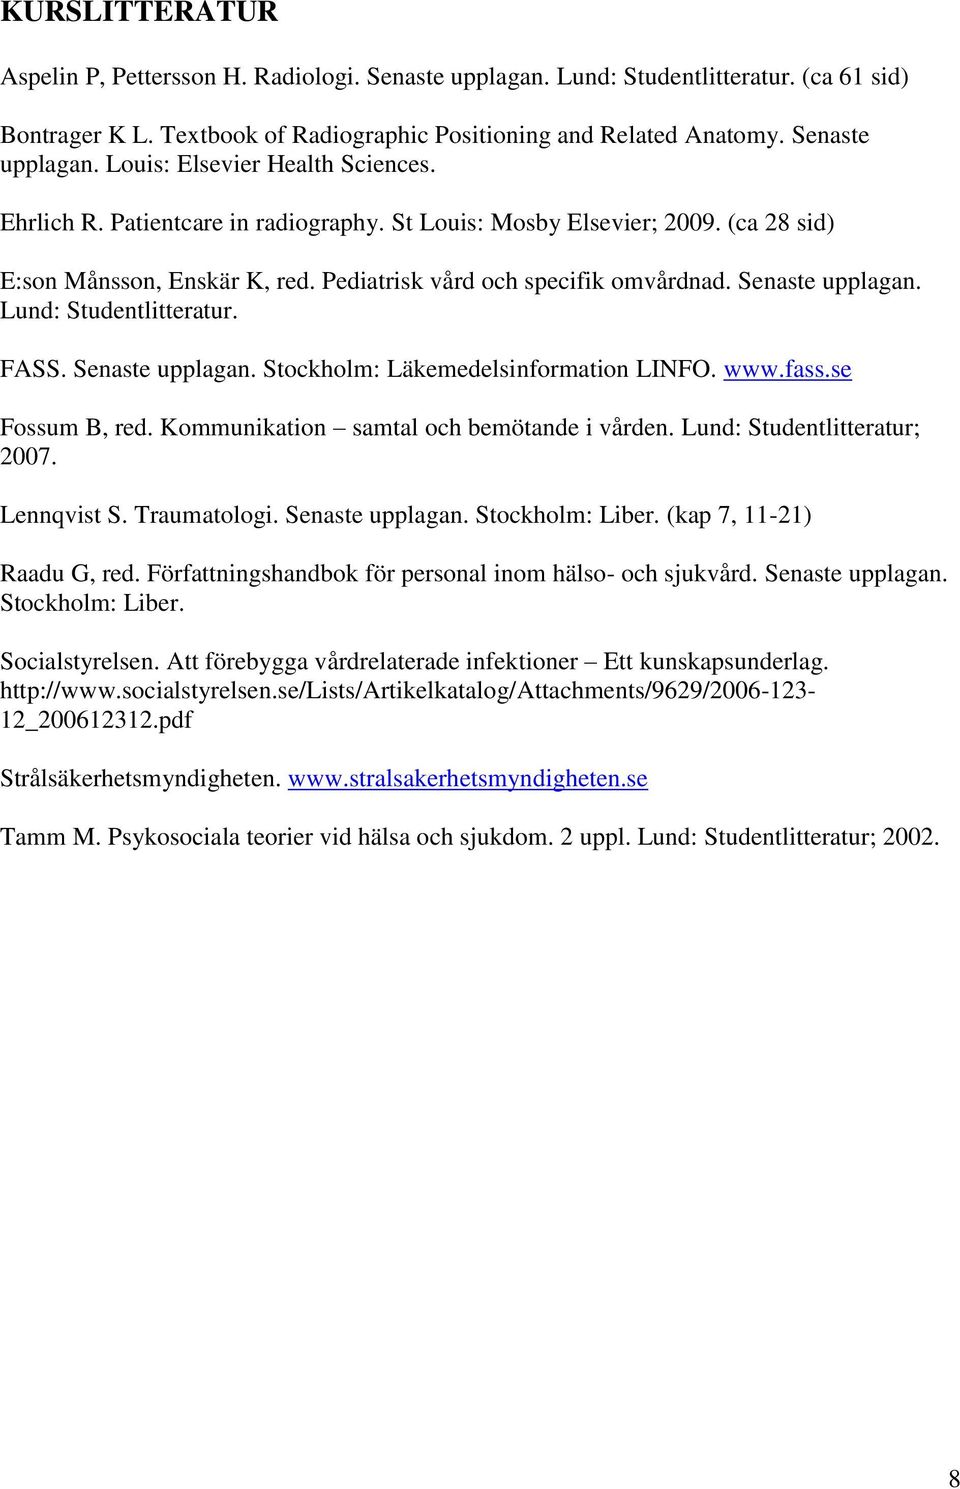 FASS. Senaste upplagan. Stockholm: Läkemedelsinformation LINFO. www.fass.se Fossum B, red. Kommunikation samtal och bemötande i vården. Lund: Studentlitteratur; 2007. Lennqvist S. Traumatologi.